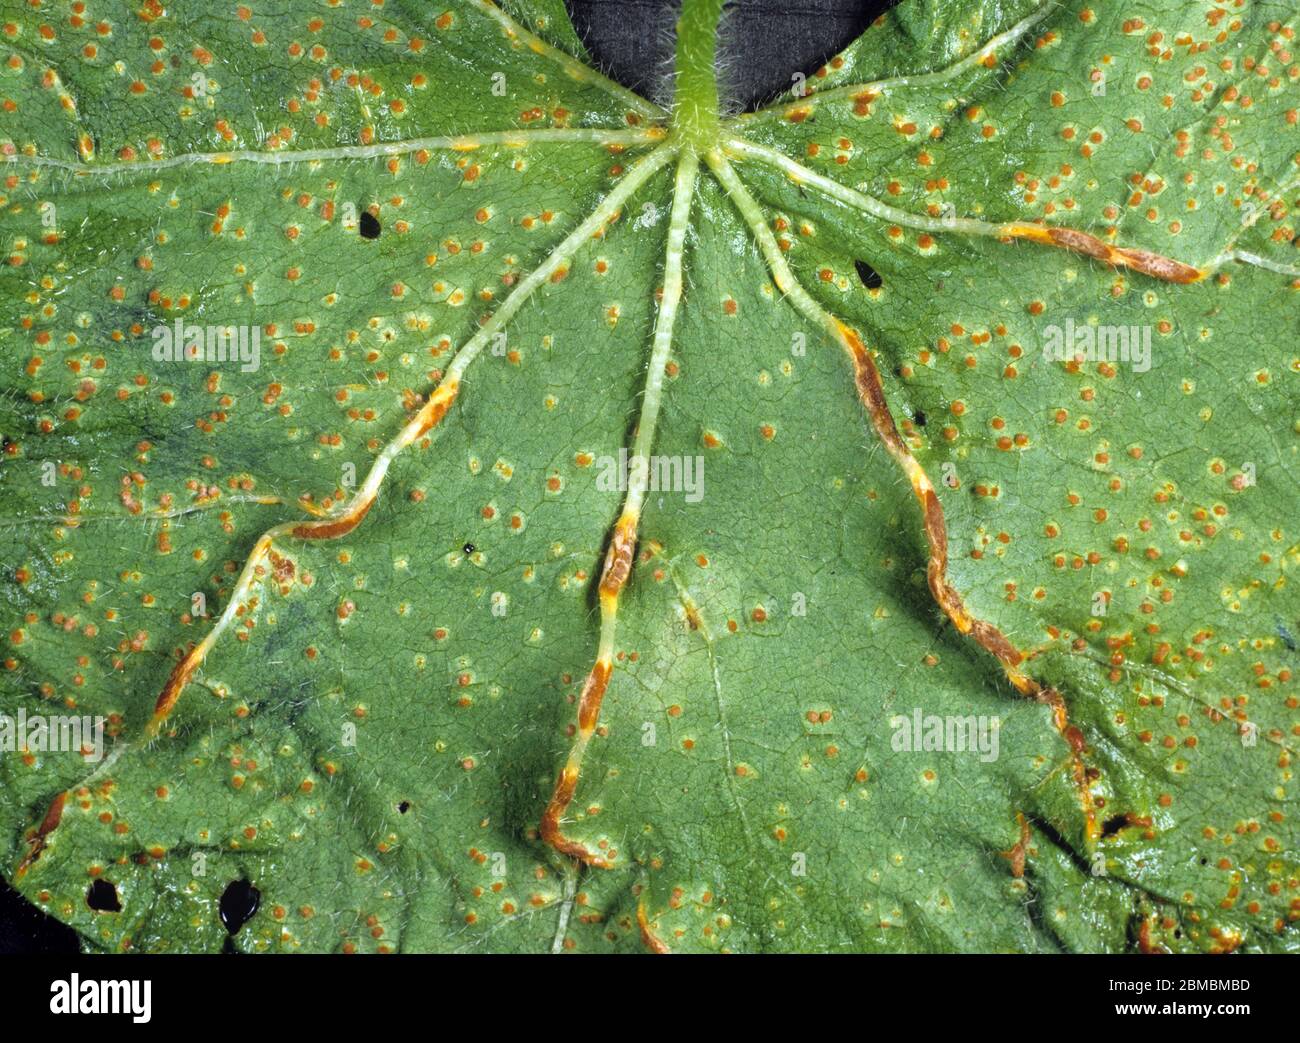 Des pustules de rouille de Hollyhock (Puccinia malvacearum) d'infection fongique sévère sur une feuille de Hollyhock sous-sol et le long des veines Banque D'Images